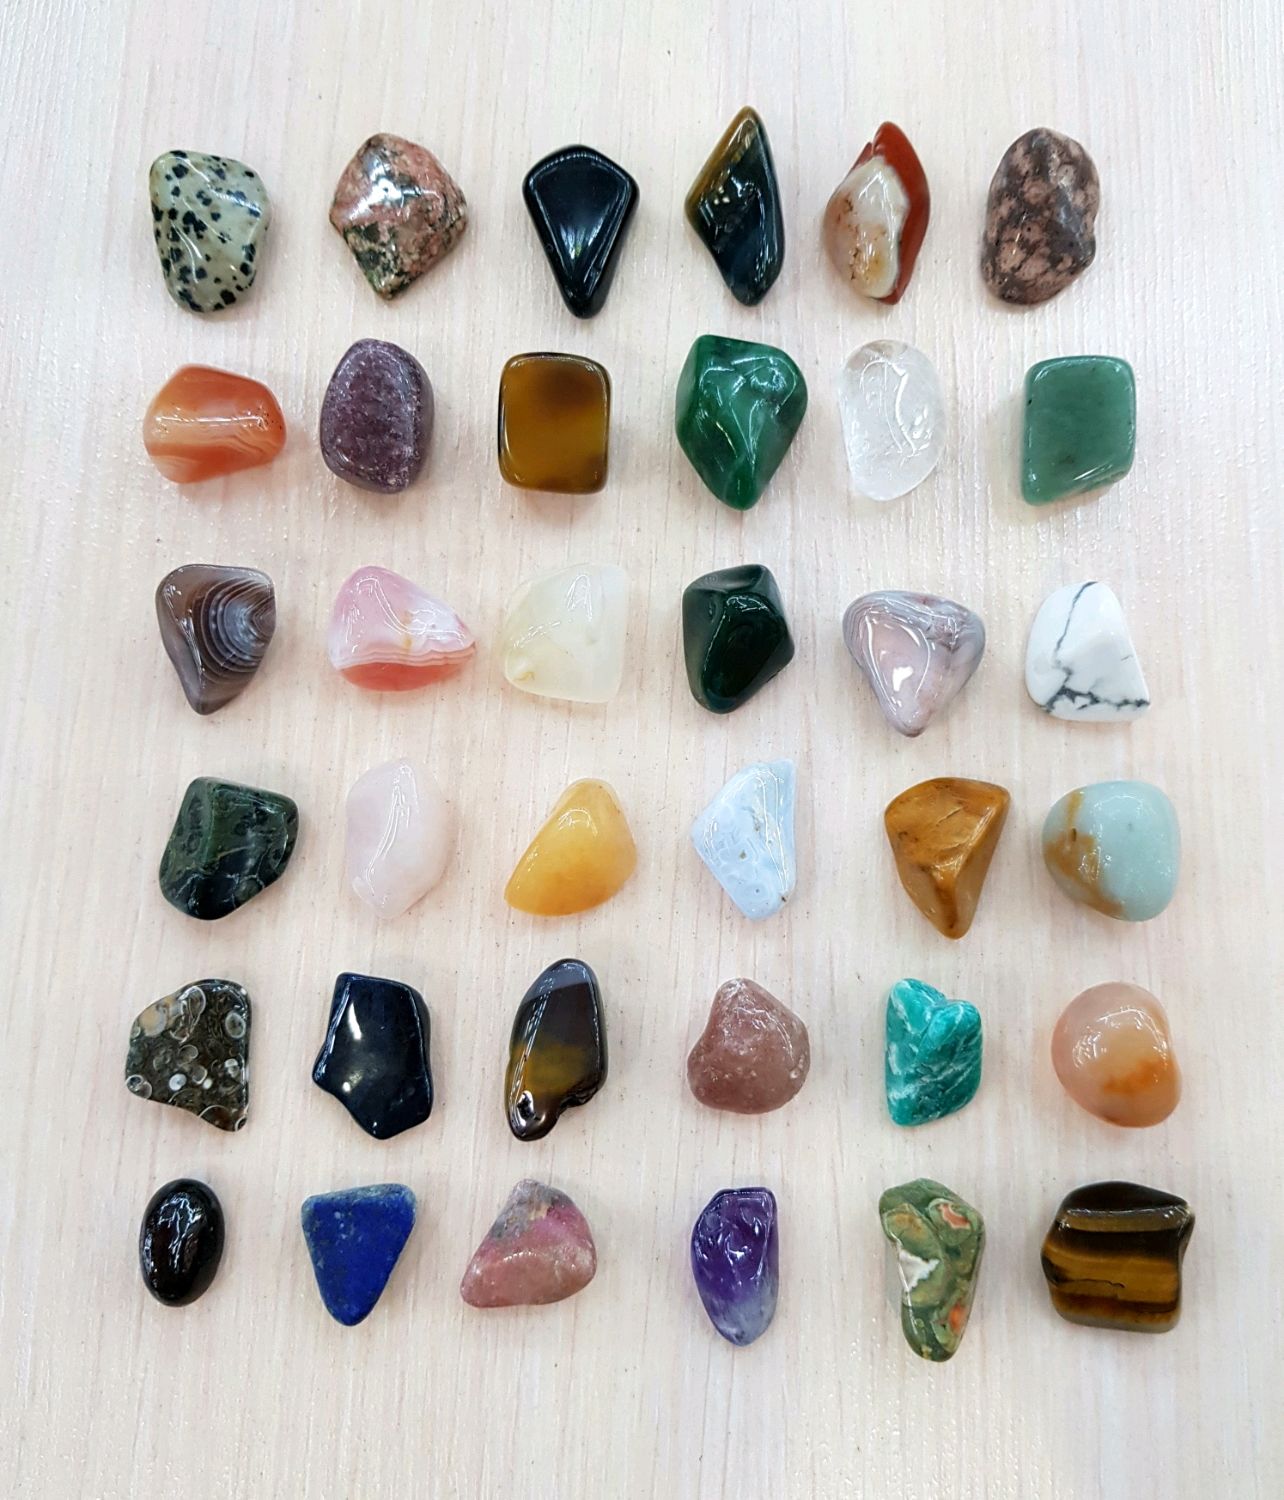 Самоцветы вакансии. Бесцветный минерал. Таблица совместимости камней и минералов между собой.